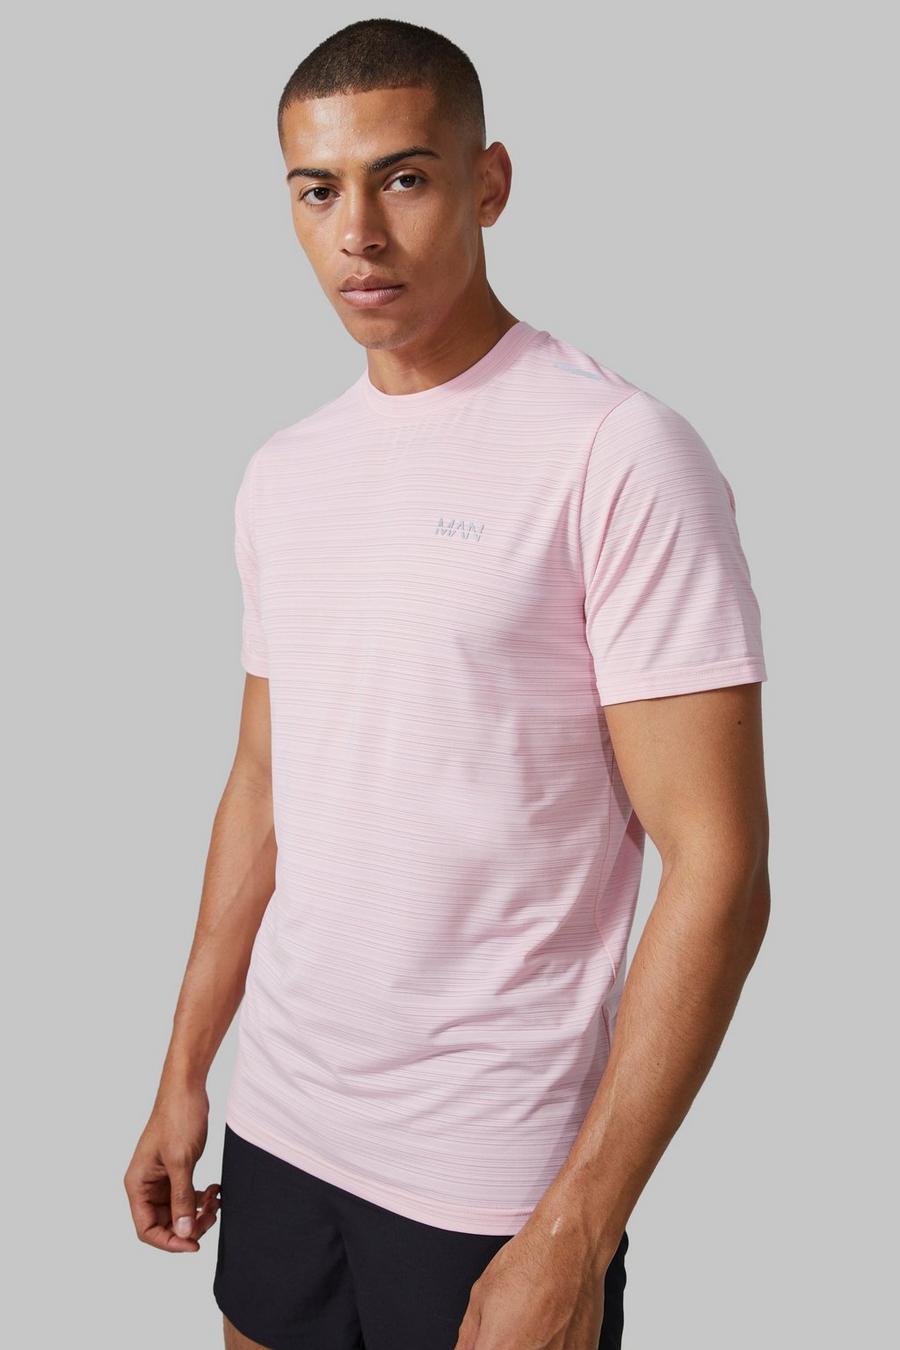 Man Active Lightweight Performance T-Shirt, Light pink